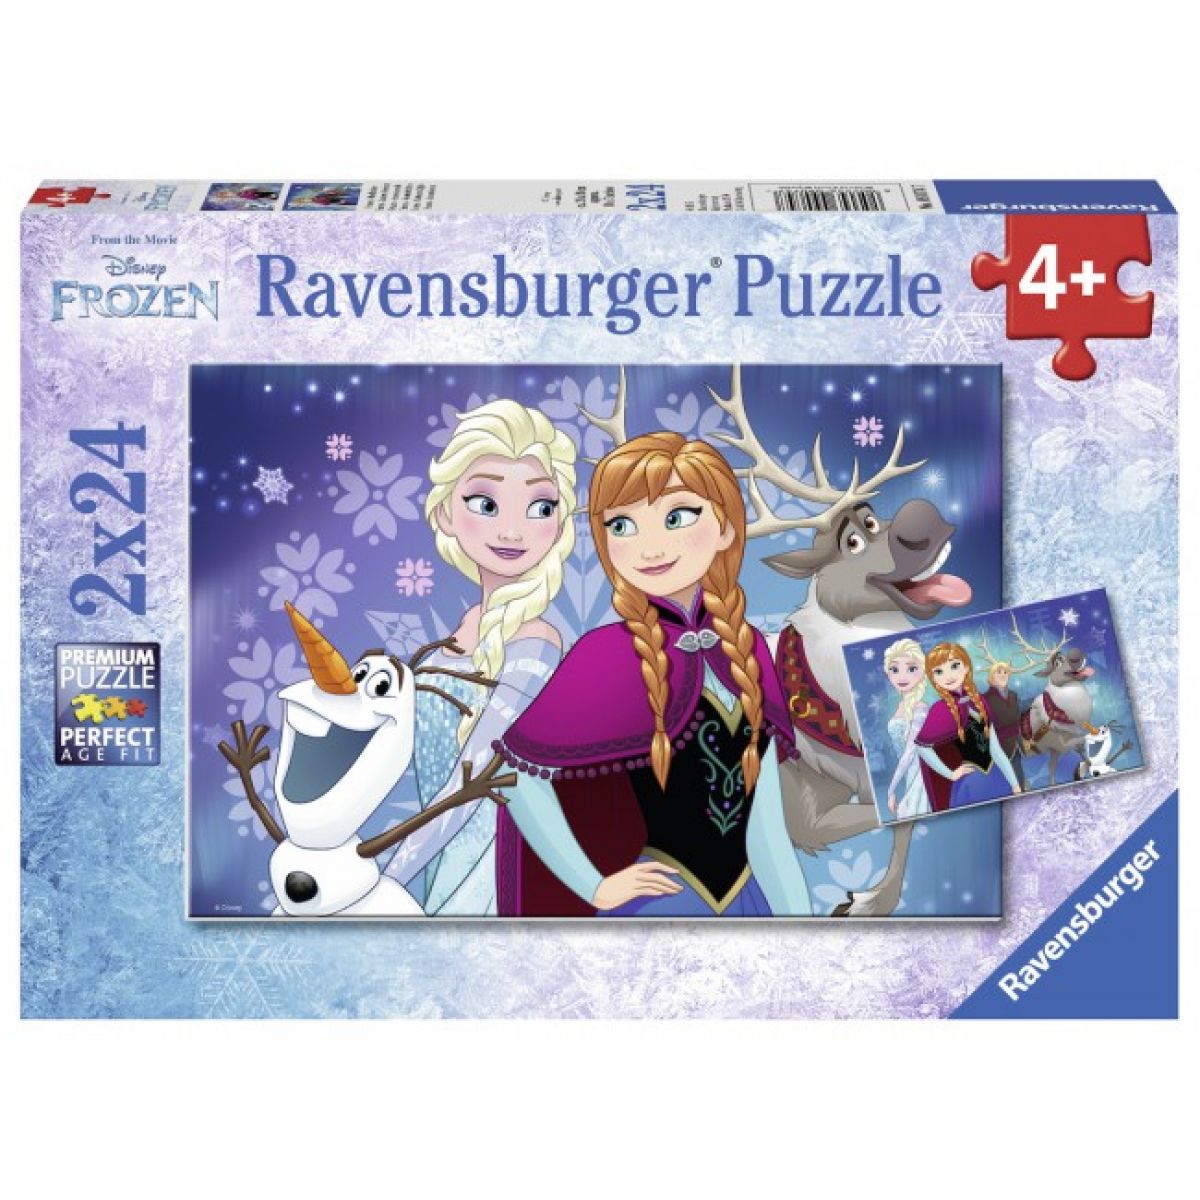 Ravensburger Puzzle Ledové království 2 x 24 dílků